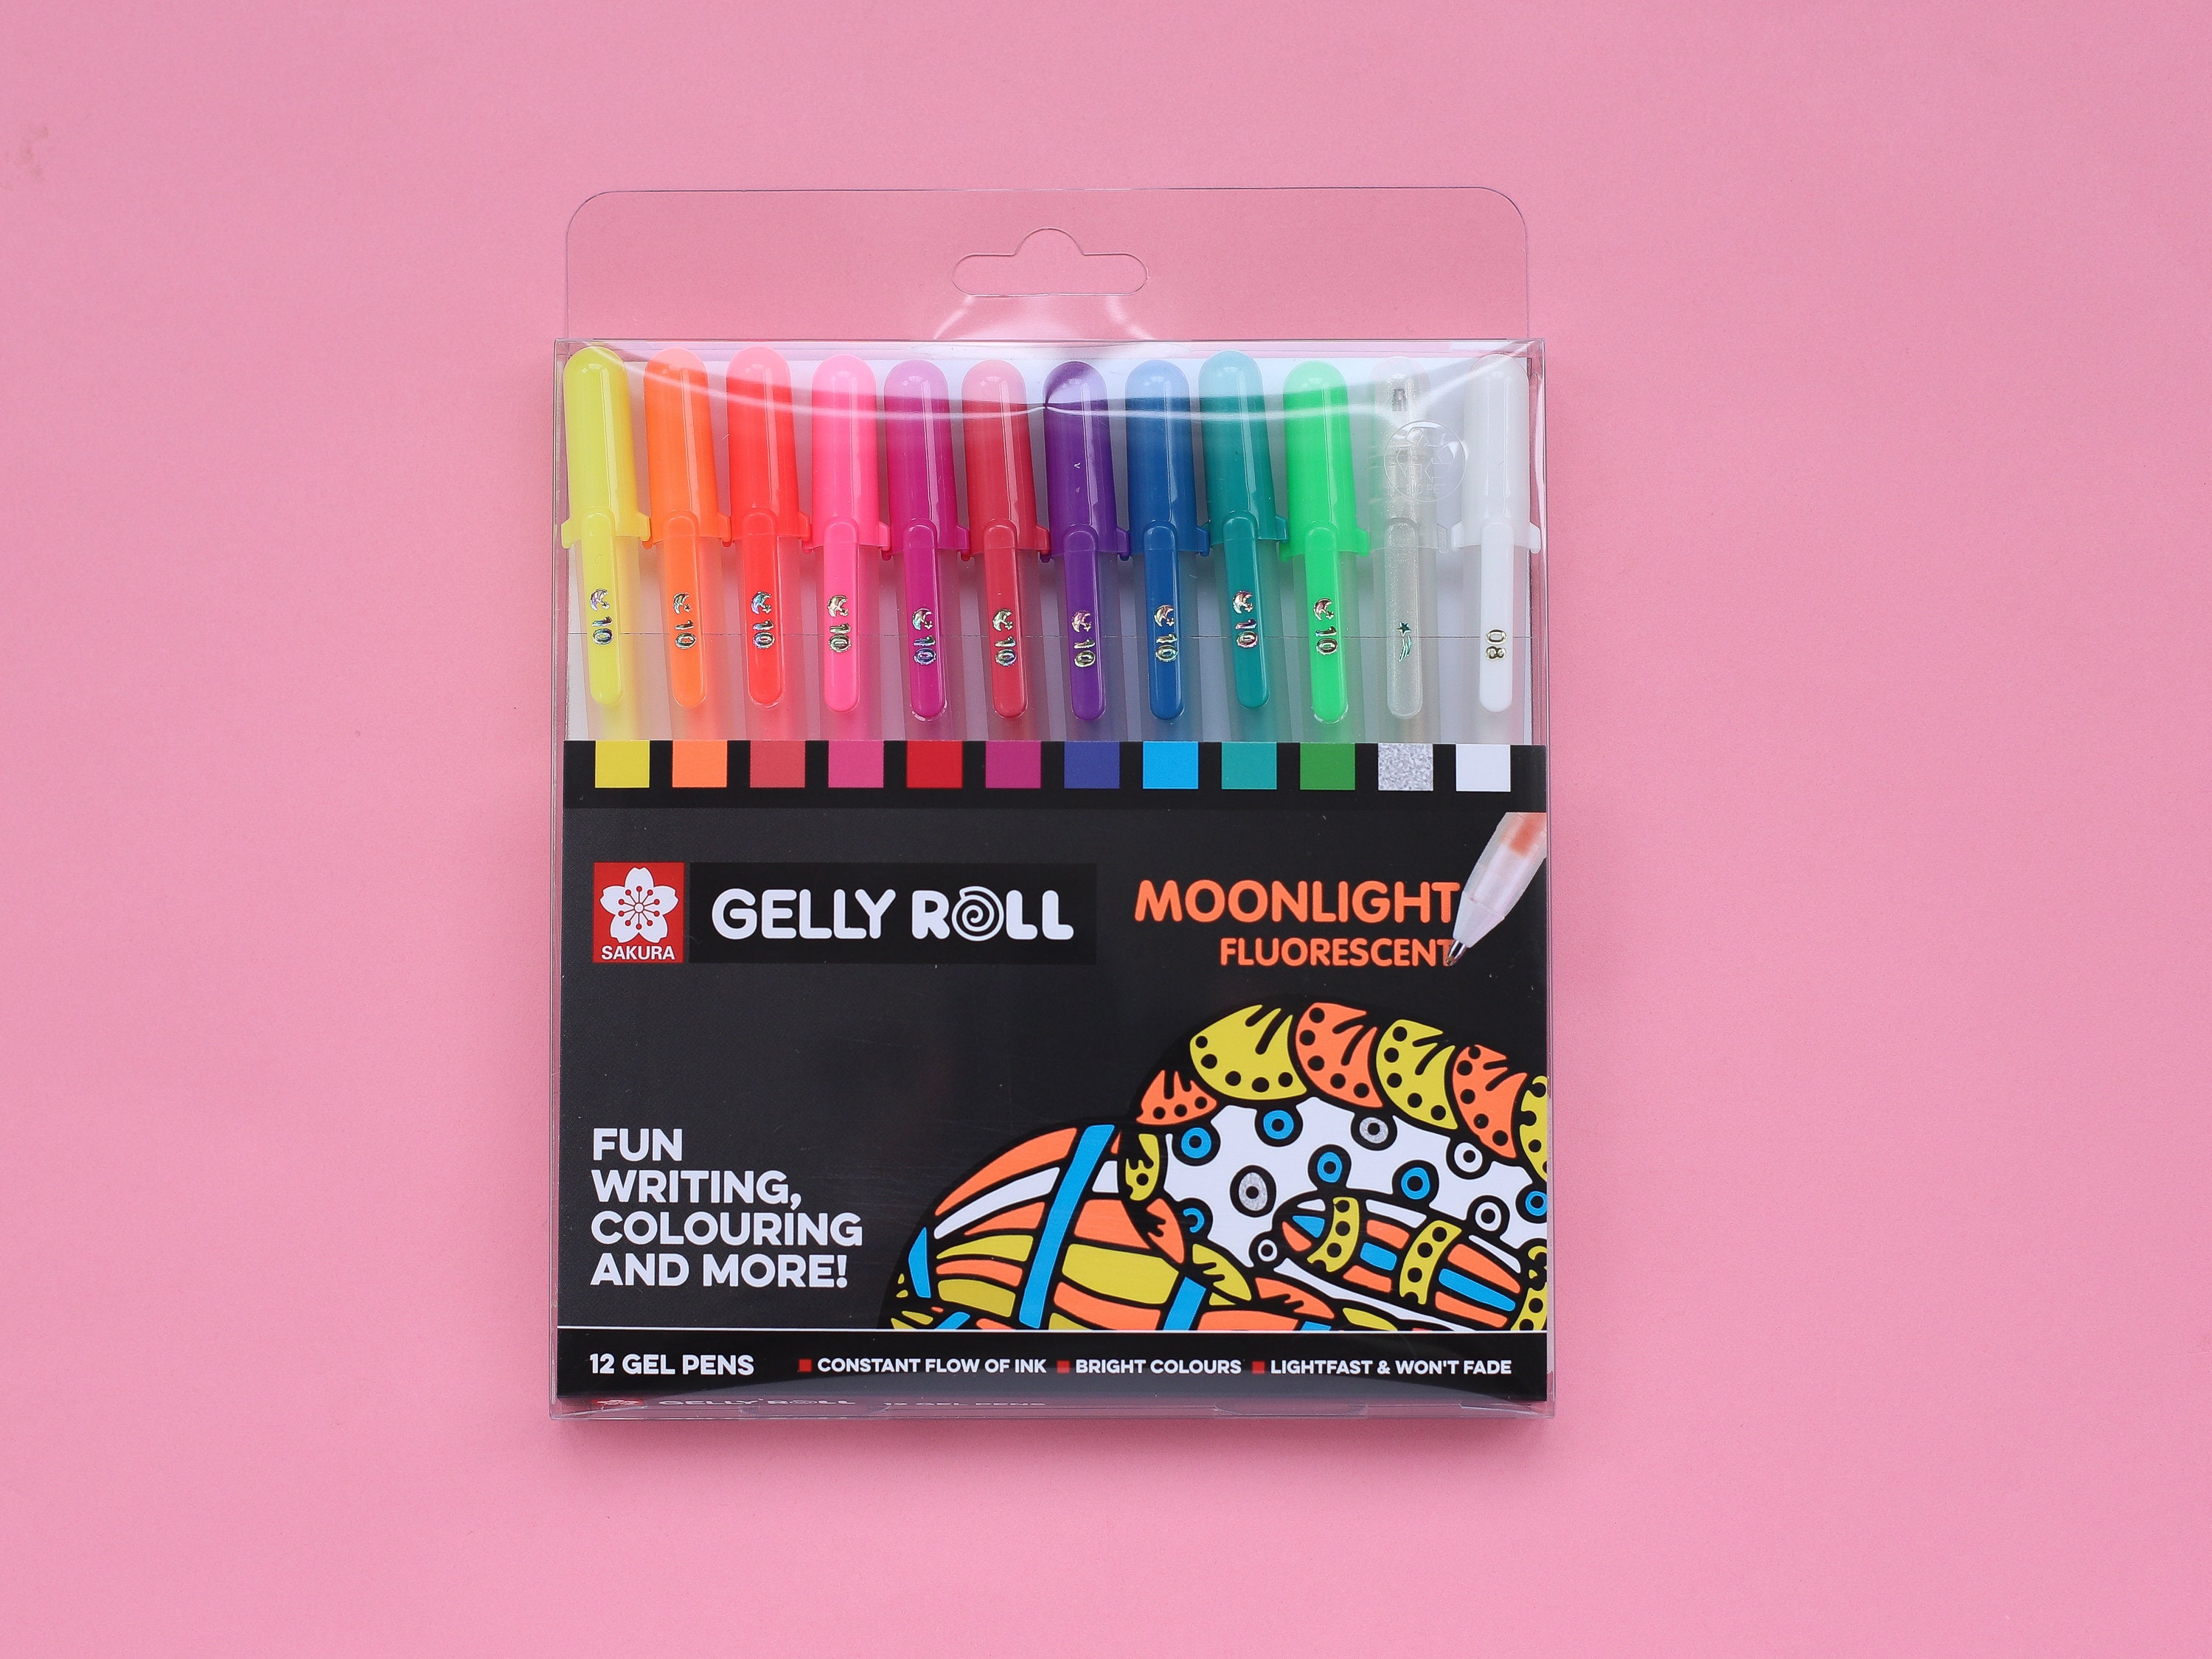 Sakura Gelly Roll Gel Pens 05/08/10 Bright White Ink Blister Pack of 3 